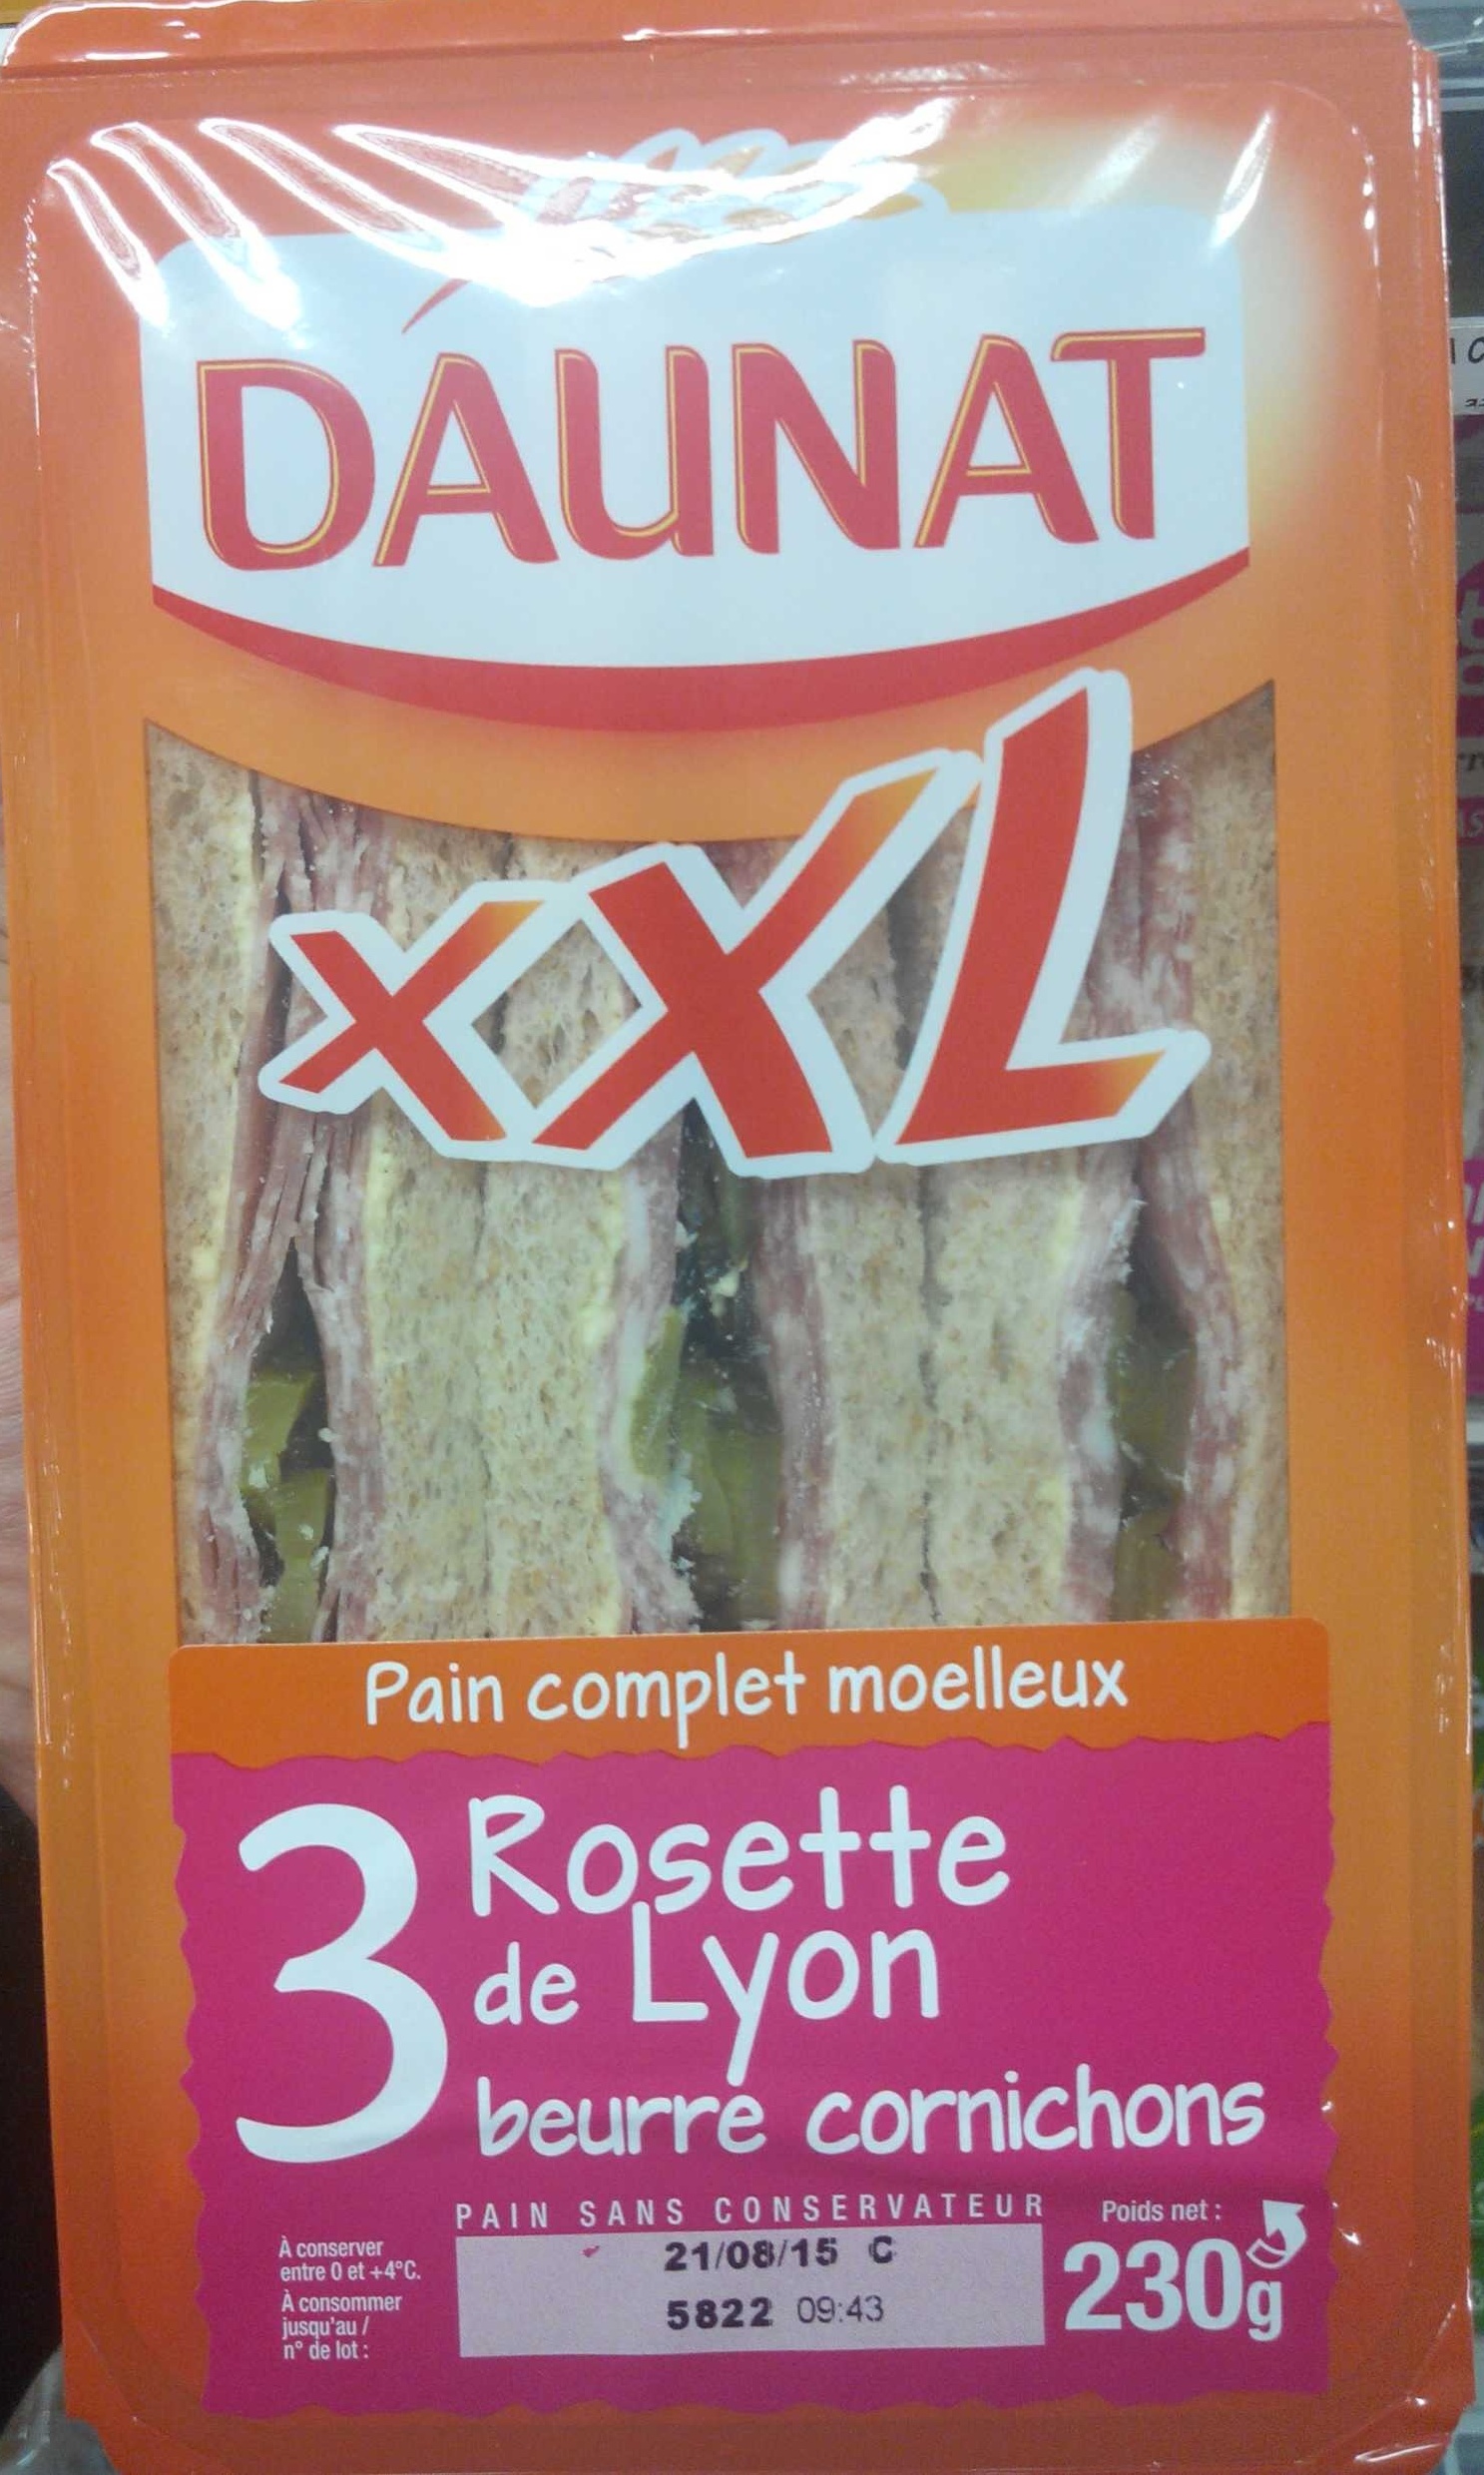 XXL Rosette de Lyon beurre cornichons - Producto - fr